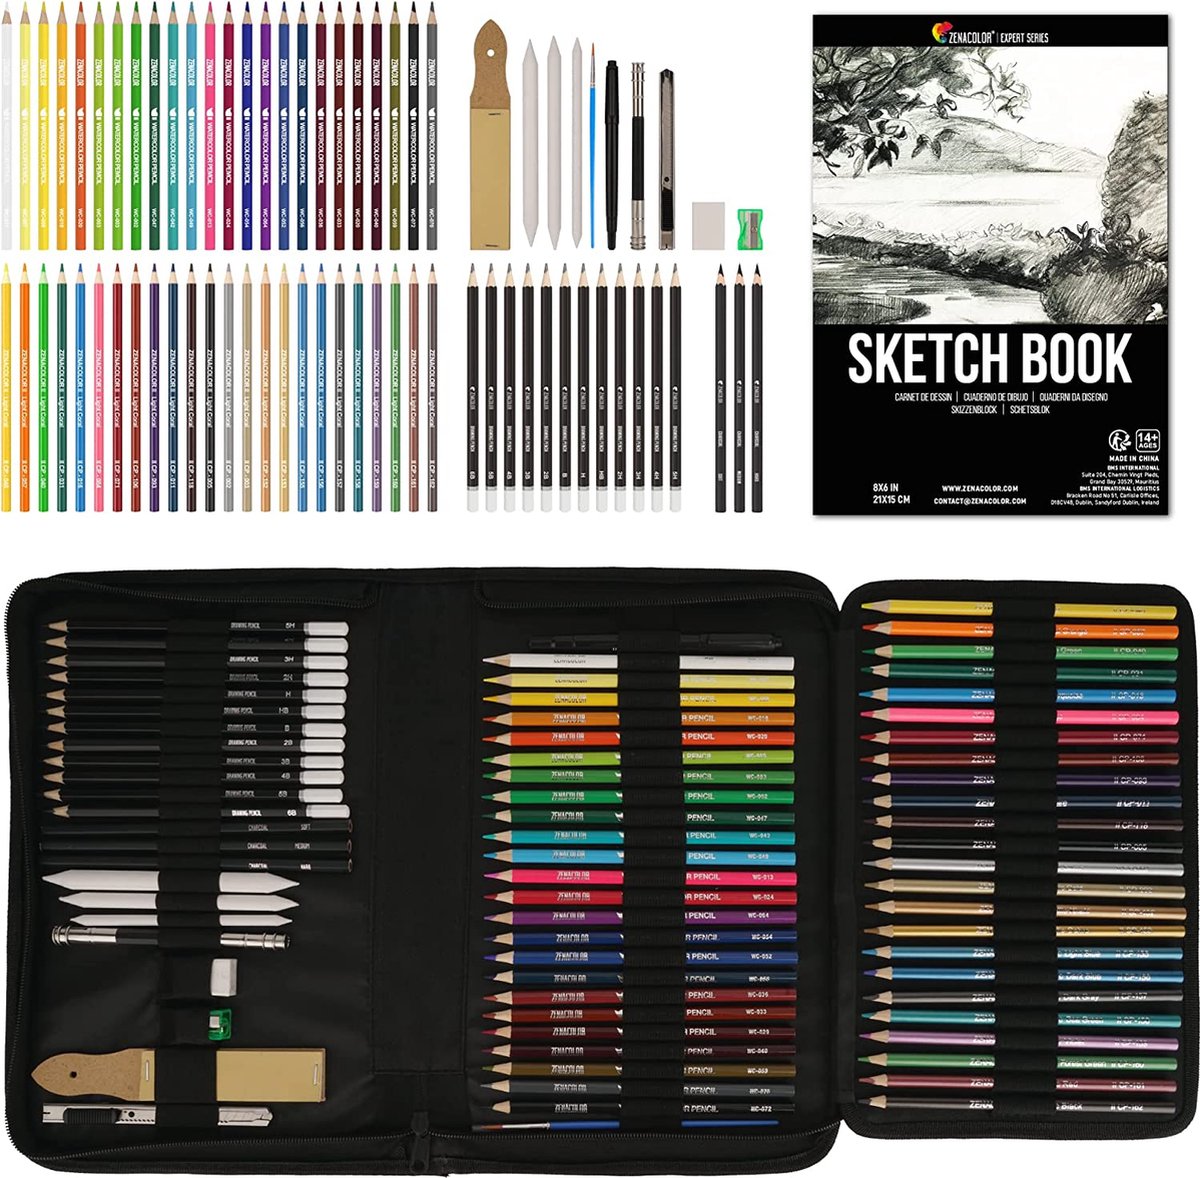 Complete Tekenset 74 stuks - Beginner of Professioneel, Set van 24 aquarel potloden 12 kleurpotloden 12 metaal potloden 12 papier potloden en accessoires - 1 Tekenboek inbegrepen